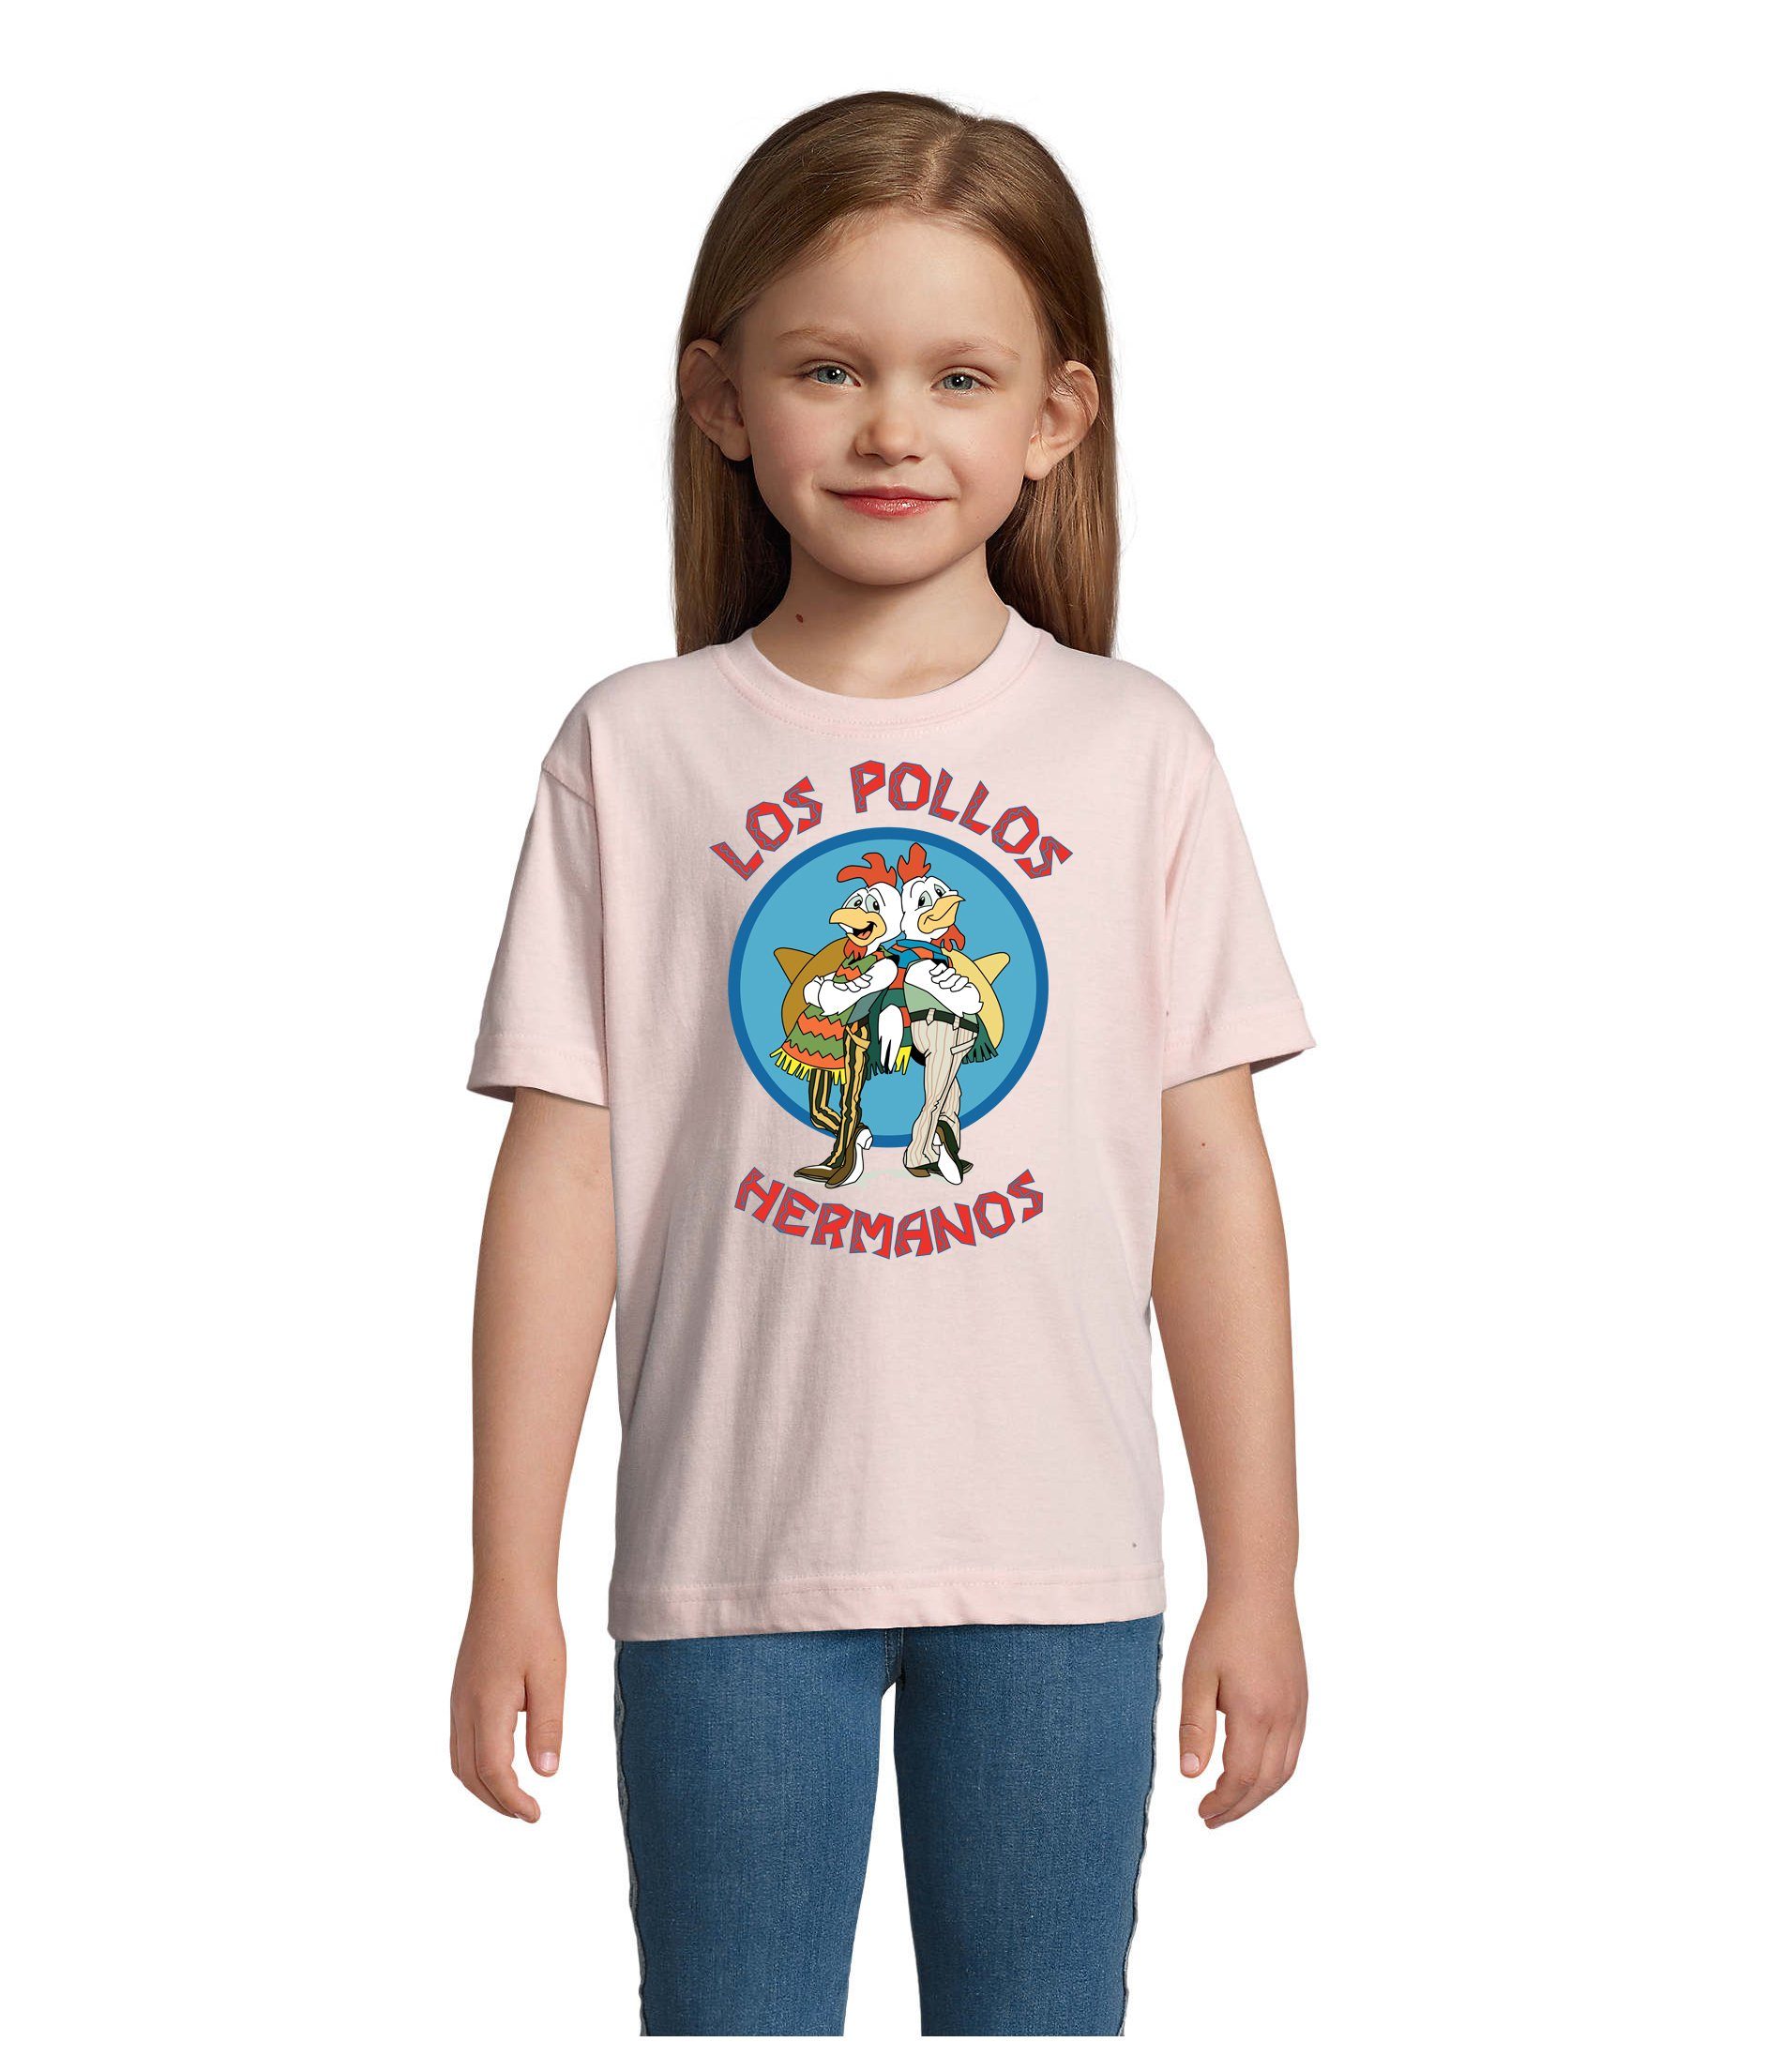 Hühner T-Shirt Hermanos Pollos & Los Jungen Kinder Farben Brownie vielen Blondie & in Rosa Mädchen